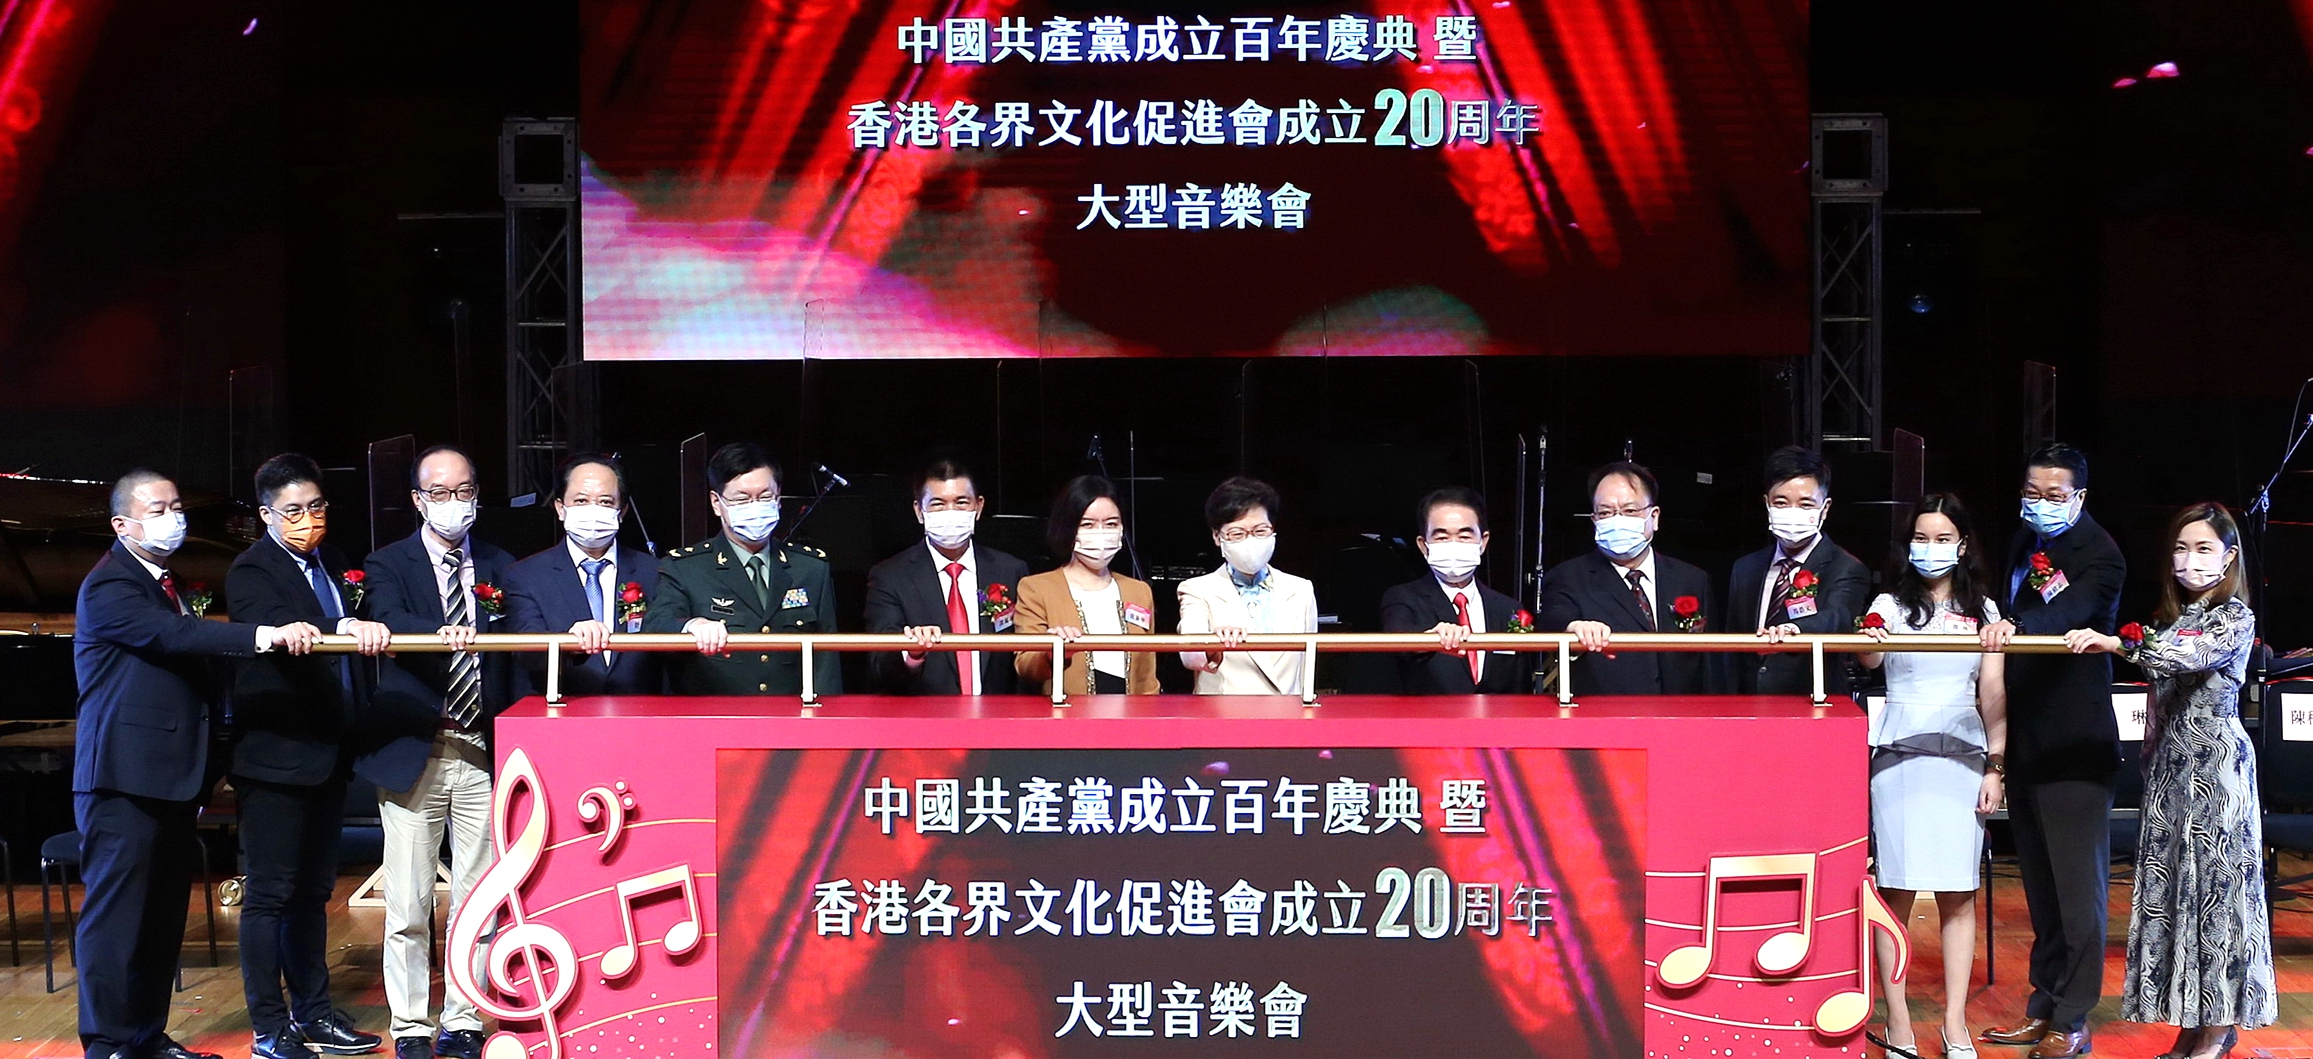 中国共产党百年庆典暨香港各界文化促进会成立20周年大型音乐会举办 卢新宁出席